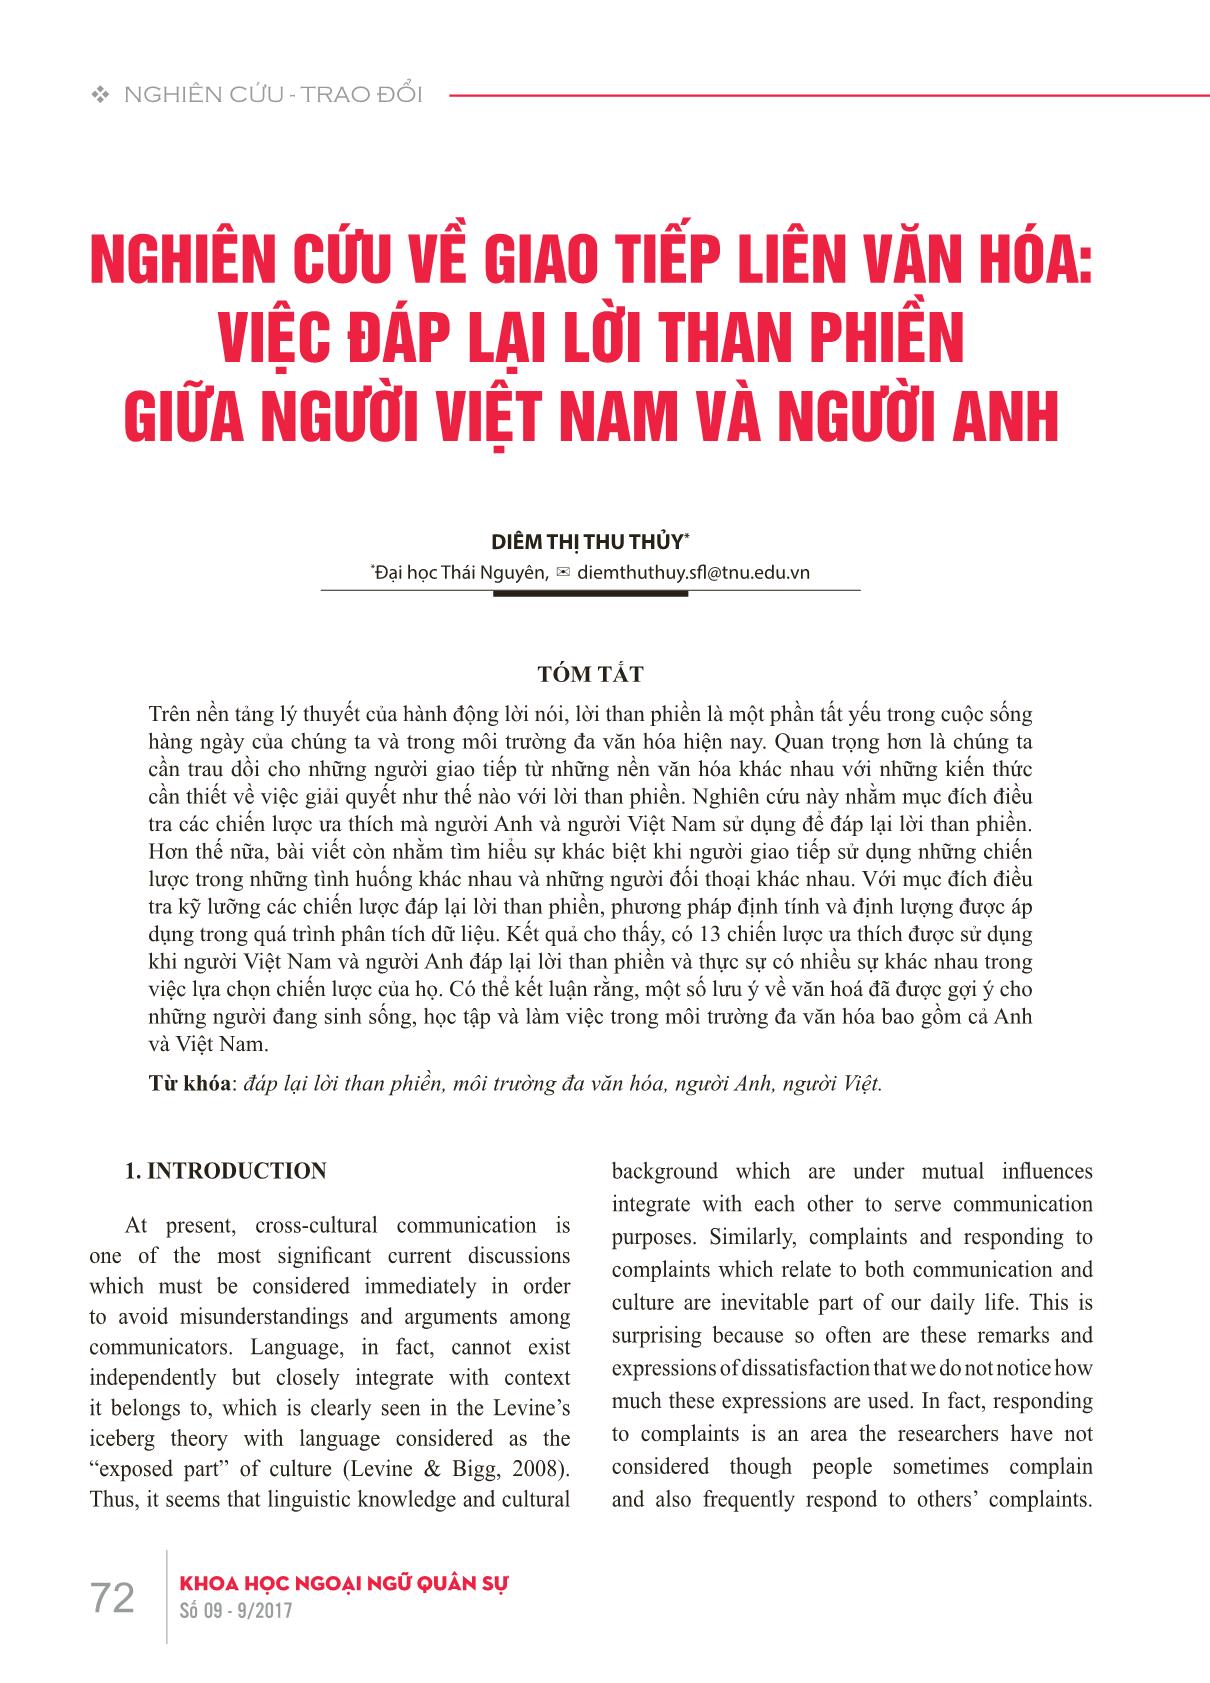 Nghiên cứu về giao tiếp liên văn hóa: Việc đáp lại lời than phiền giữa người Việt Nam và người Anh trang 1